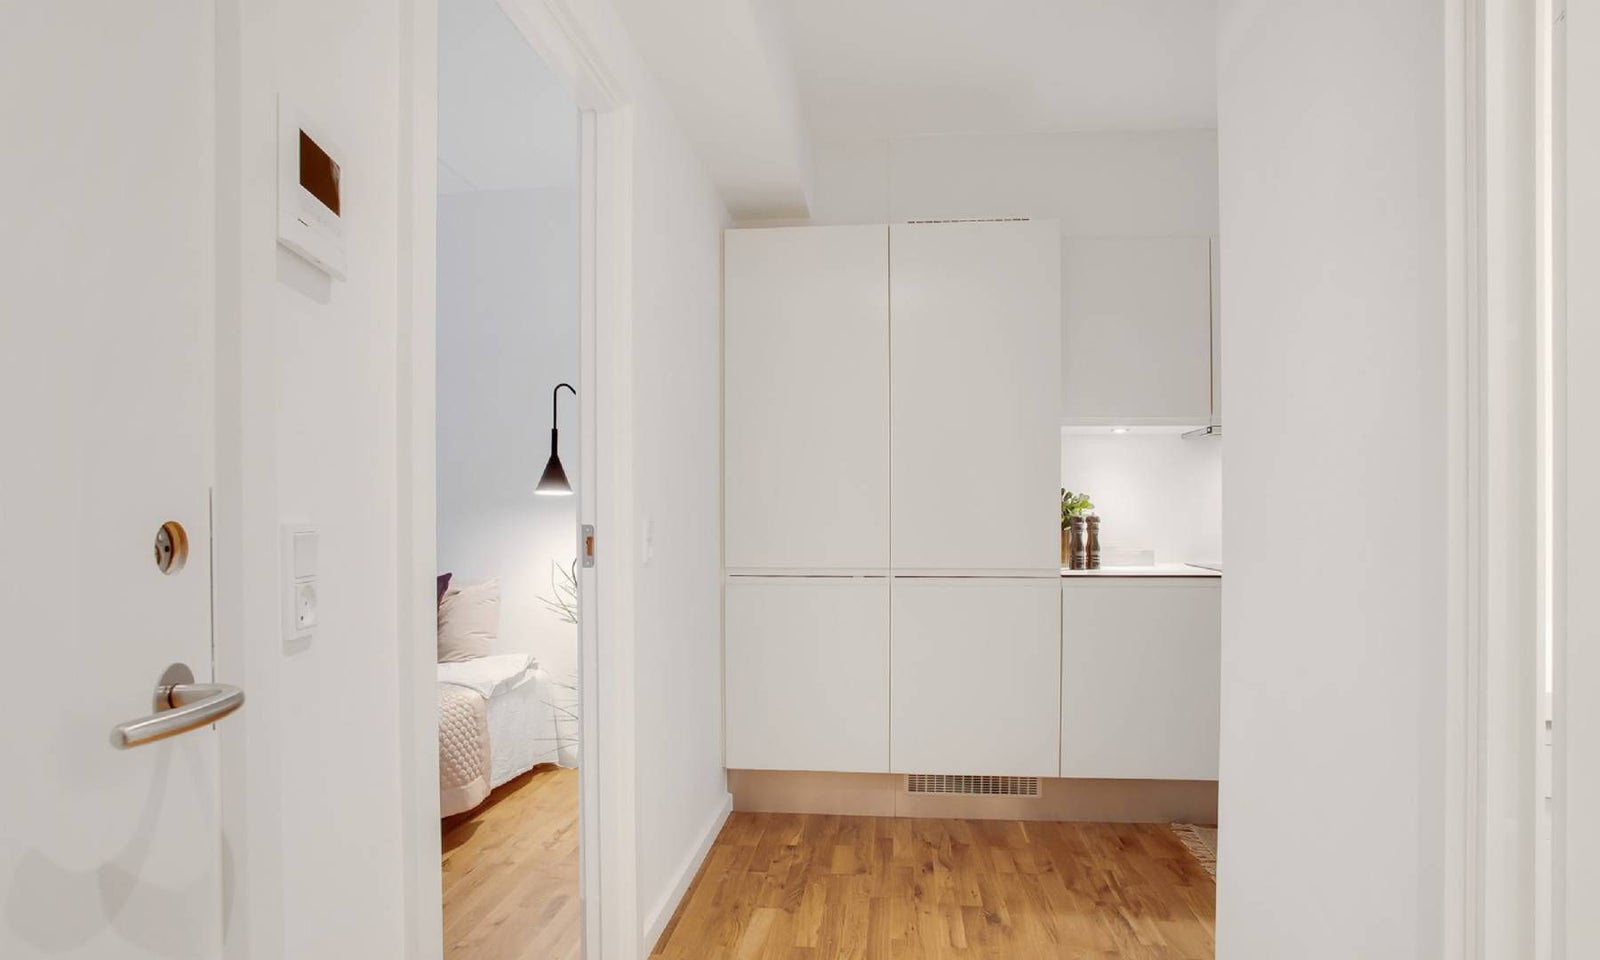 3 værelses lejlighed i København S 2300 på 70 kvm